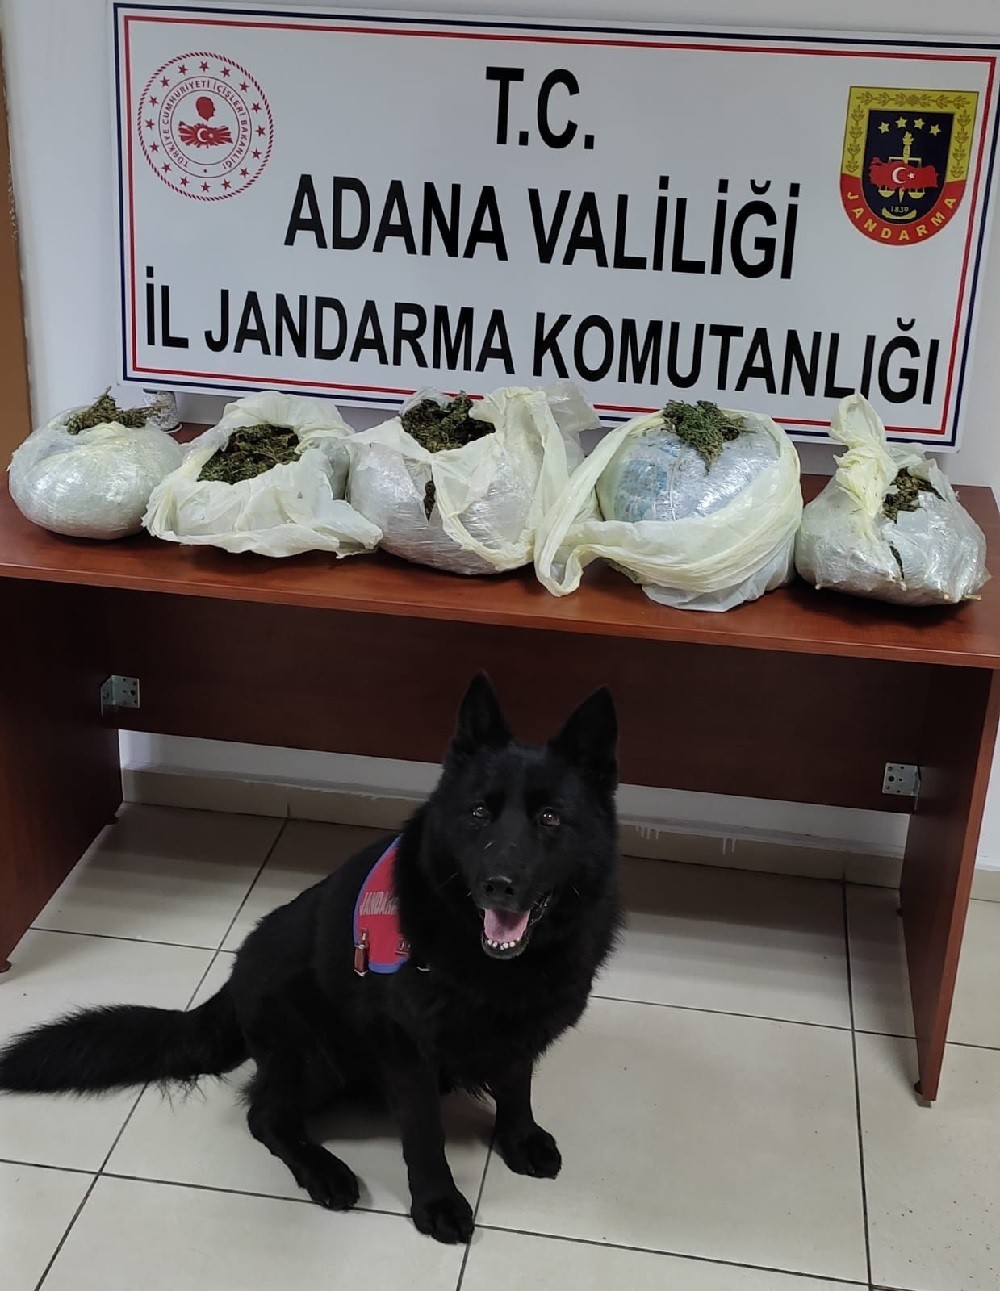 Adana’da uyuşturucu operasyonu: 1 gözaltı #adana